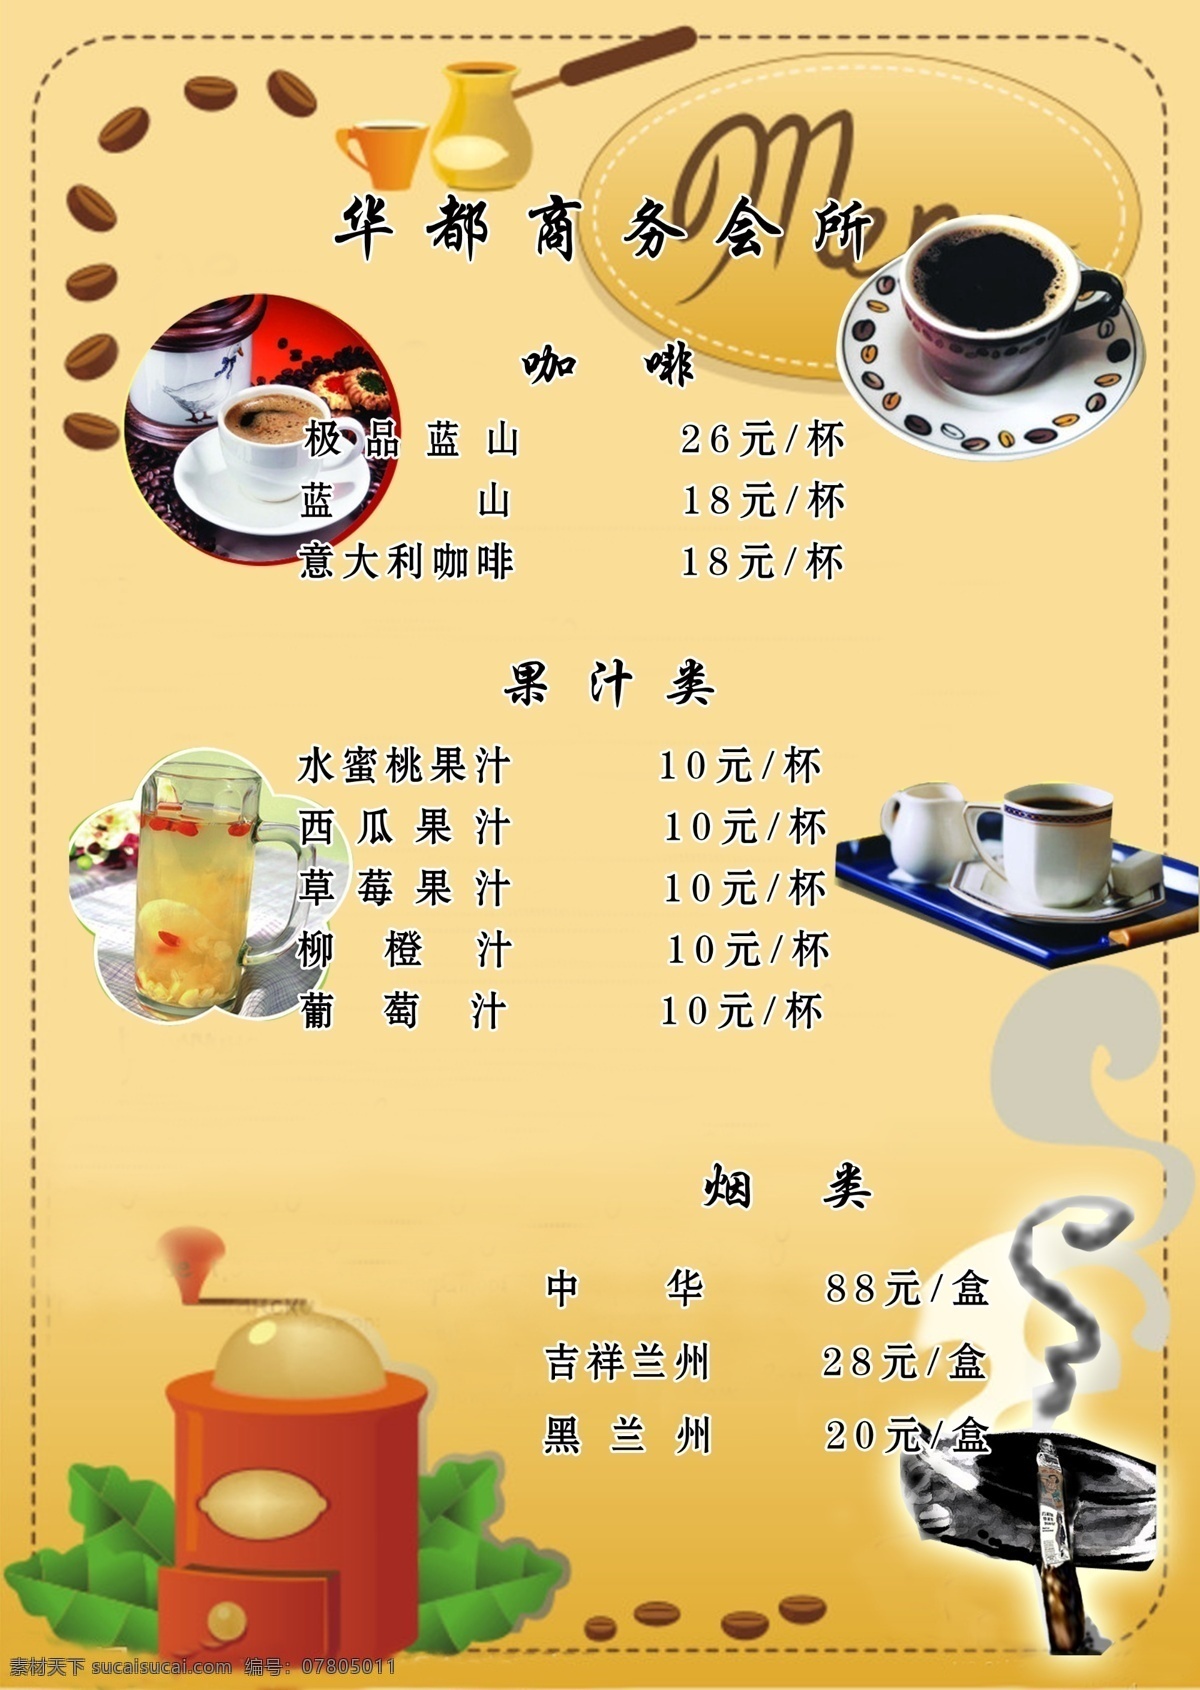 咖啡价目单 咖啡 咖啡杯 烟 果粒橙 dm宣传单 广告设计模板 源文件